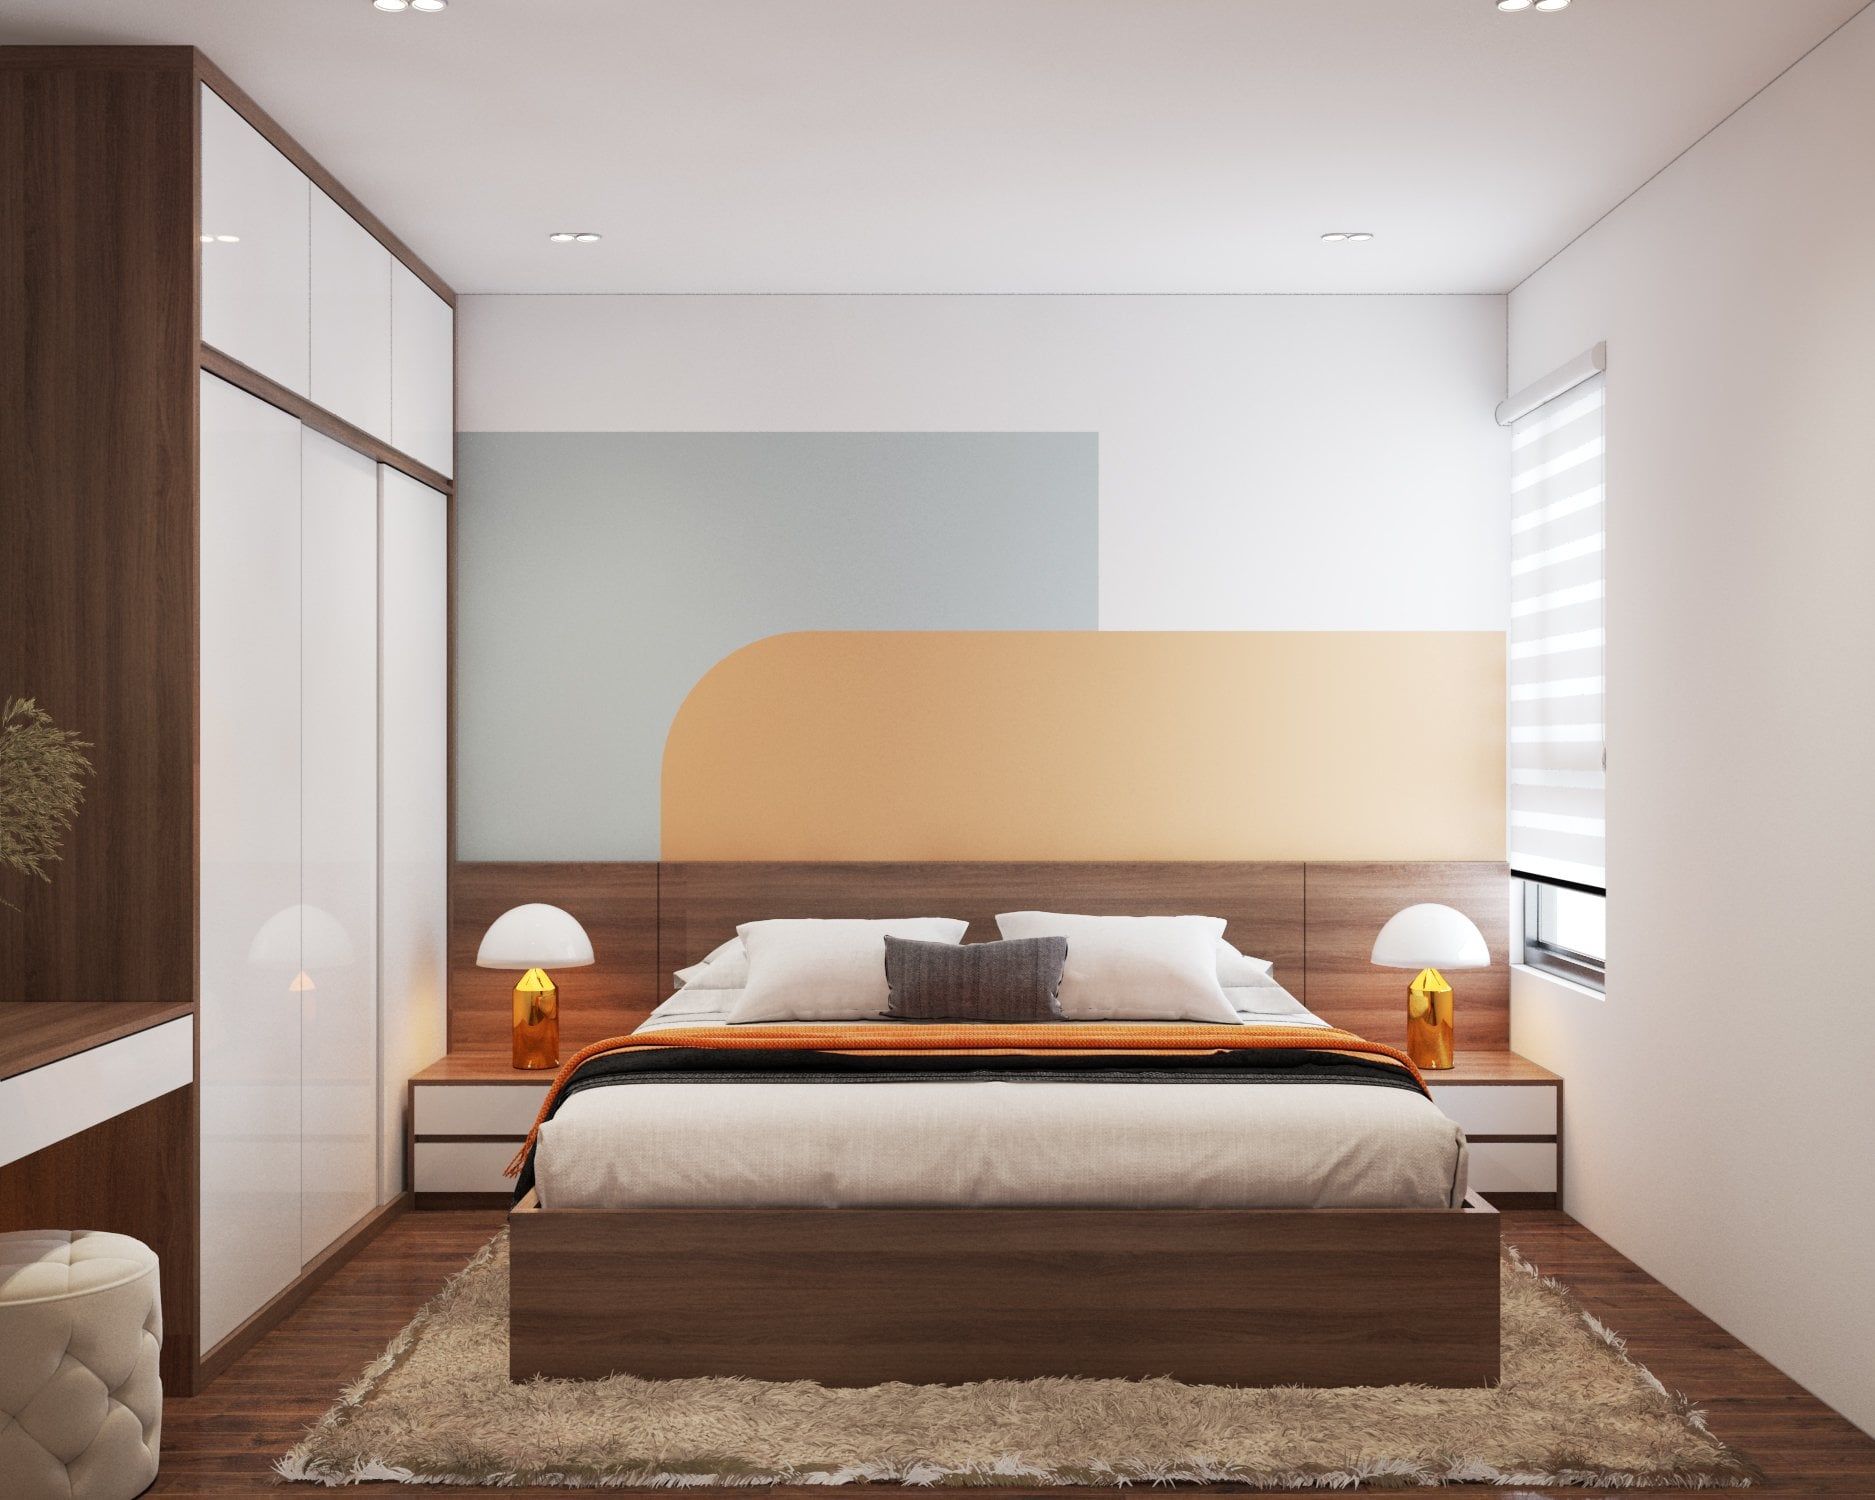 Mẫu phòng ngủ với tông màu pastel đơn giản, nhẹ nhàng